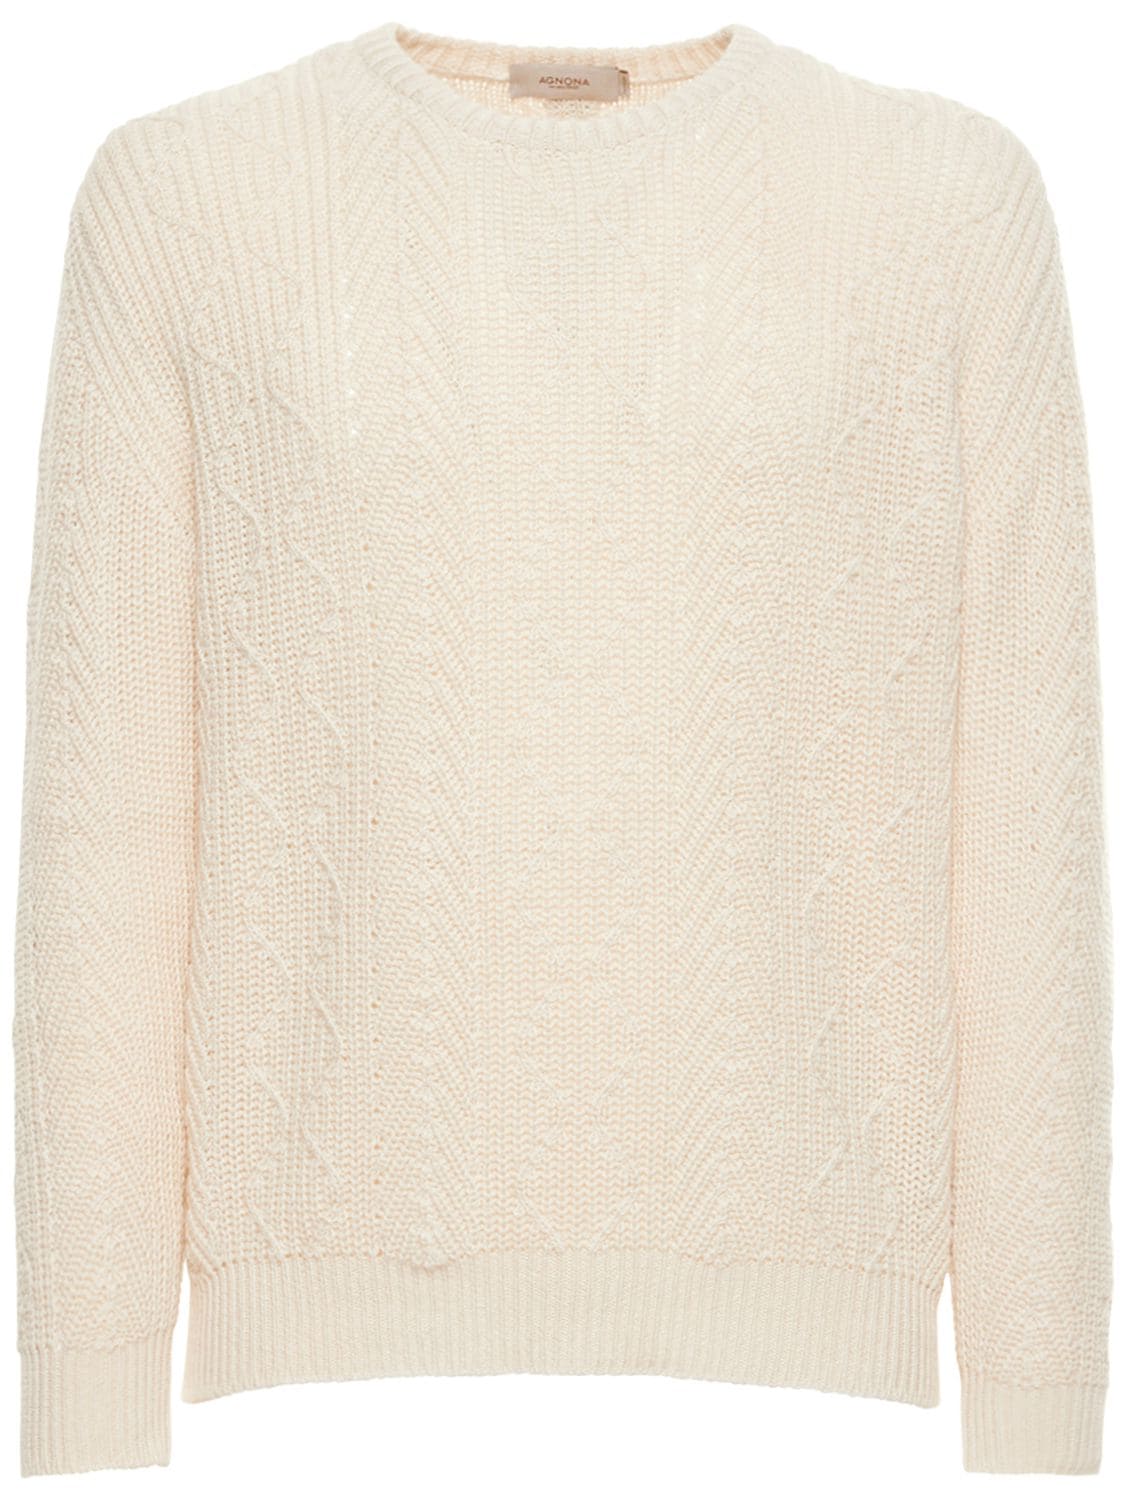 Sweater Aus Baumwollmischung Mit Rundausschnitt - AGNONA - Modalova